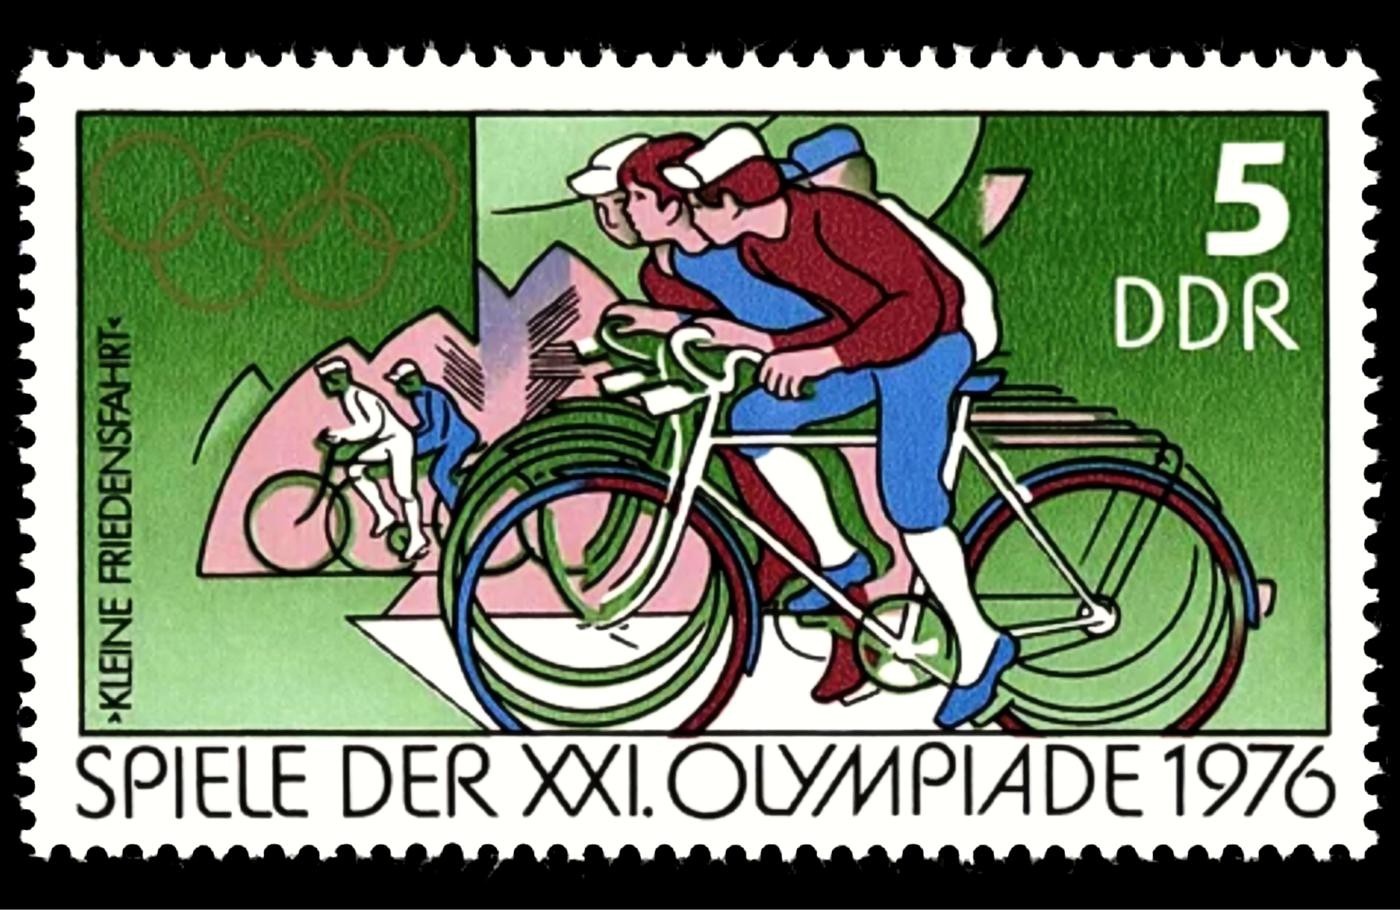 XXI Olympiade 1976 